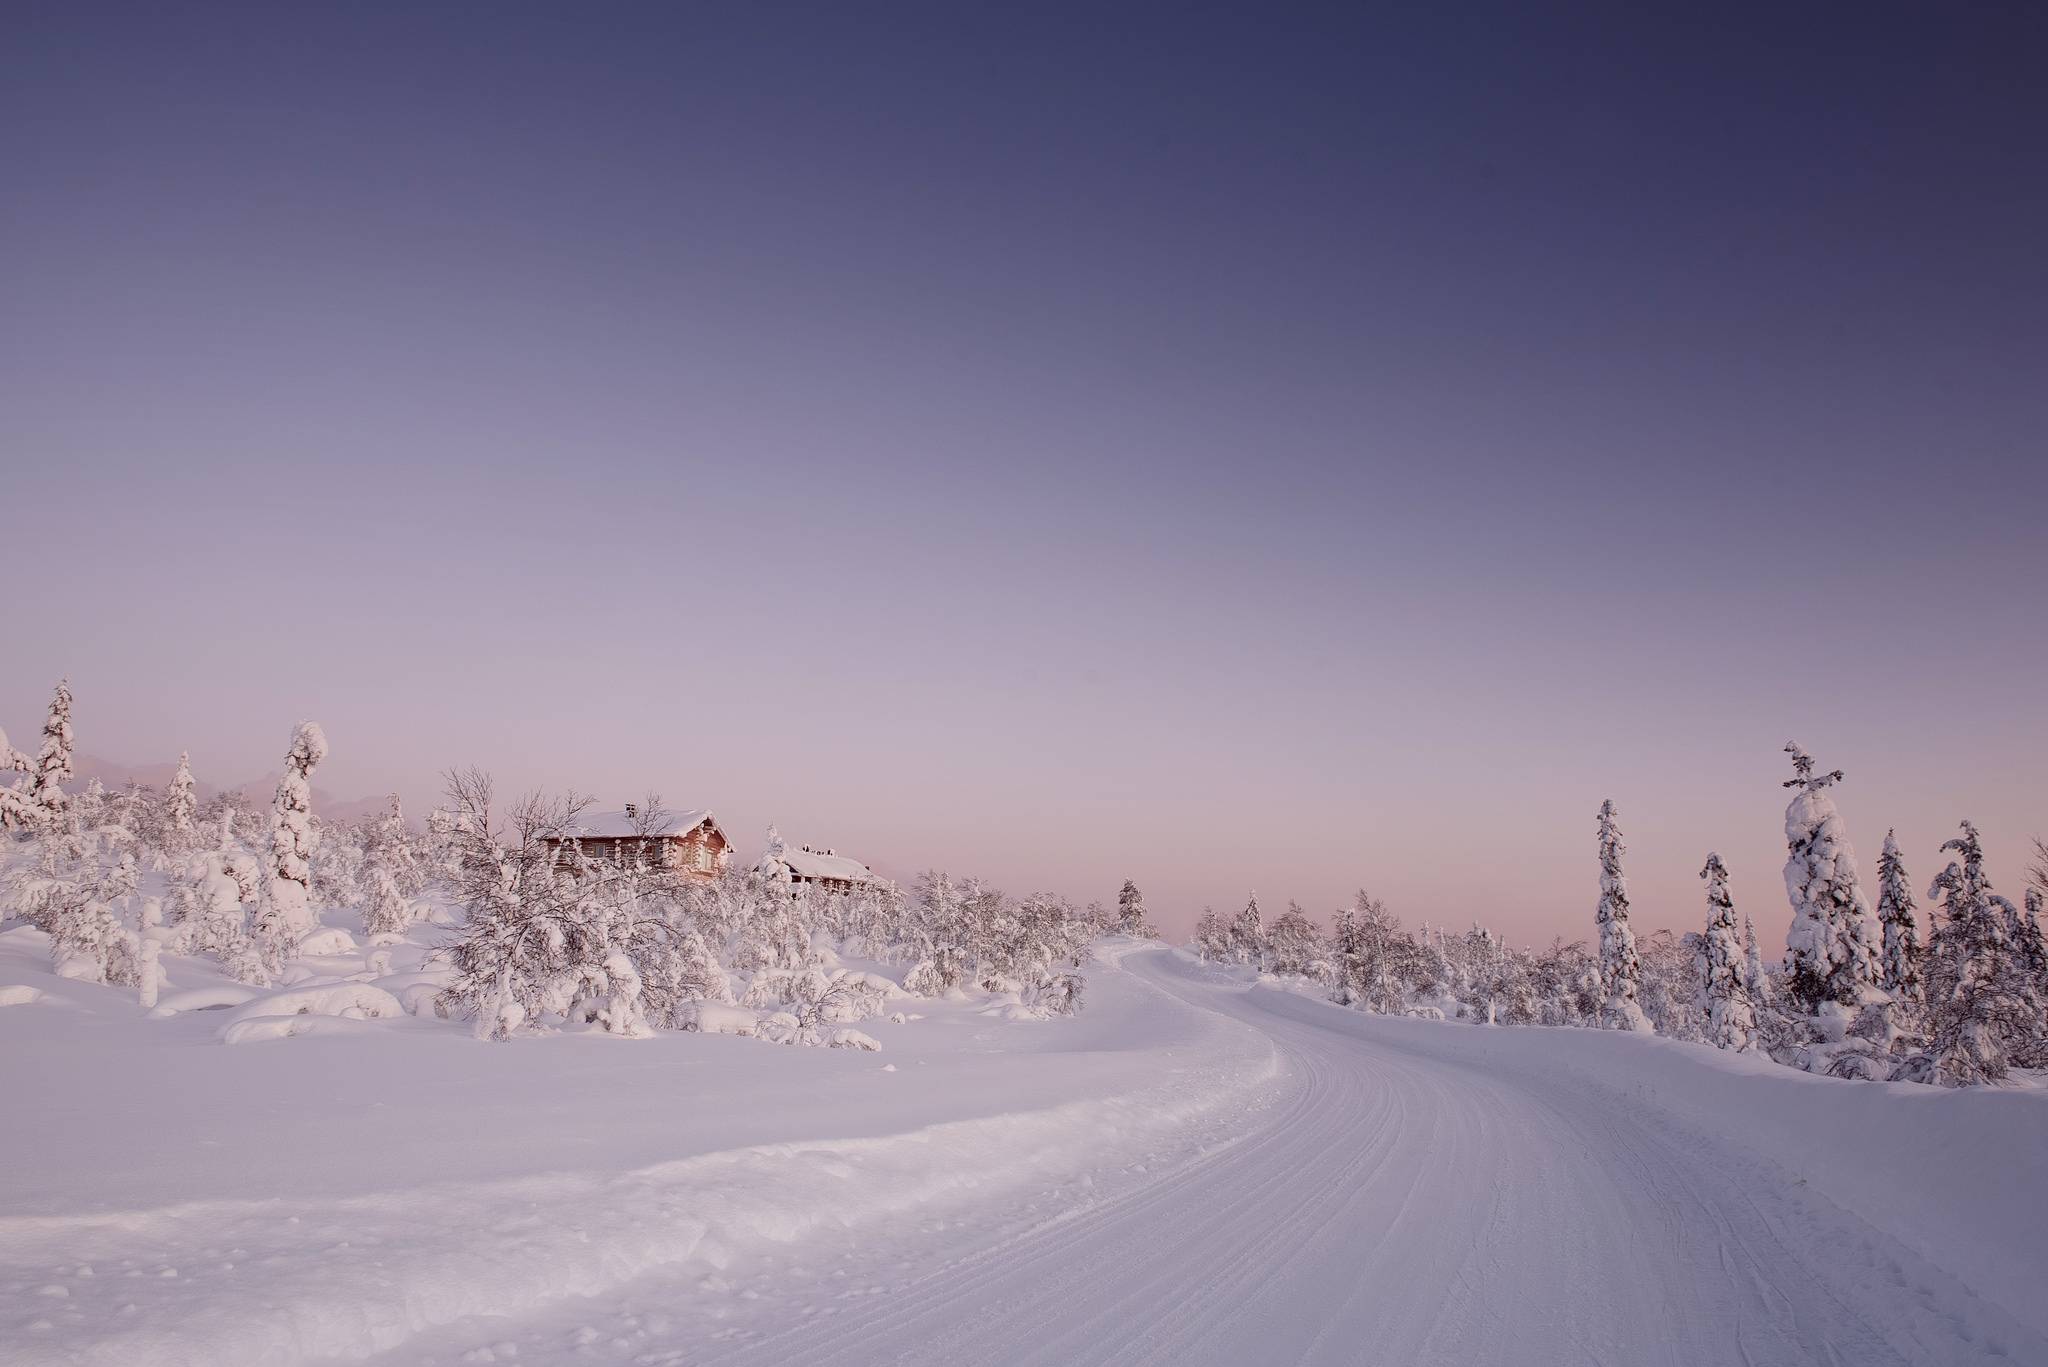 Обои Лапландия Финляндия зима на рабочий стол